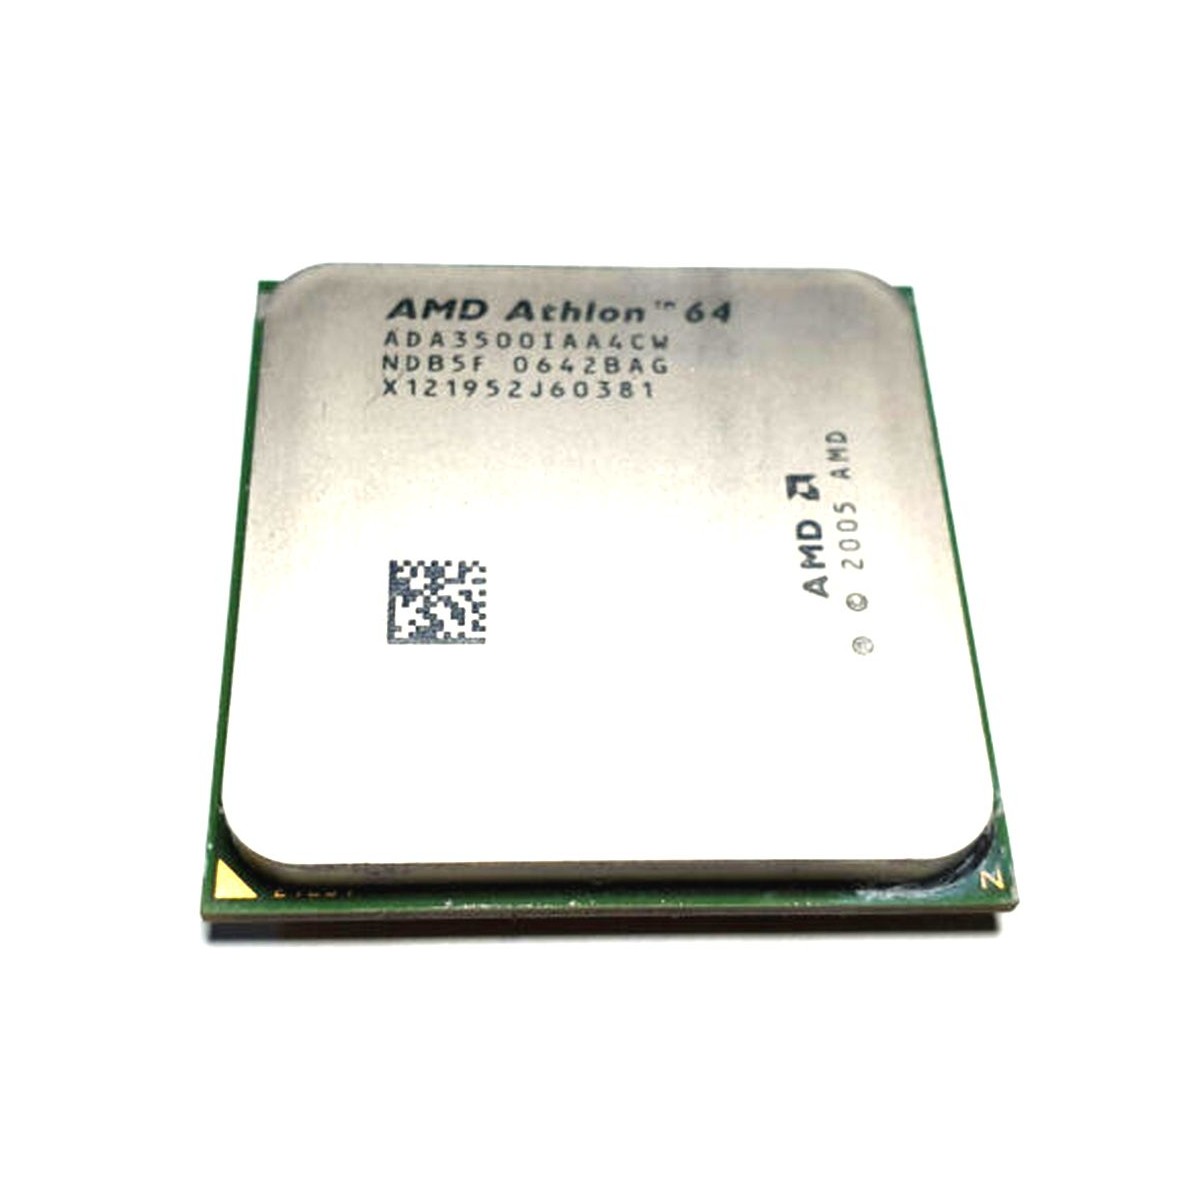 PROCESOR AMD ATHLON 64 3500+ 2.2GHZ AM2